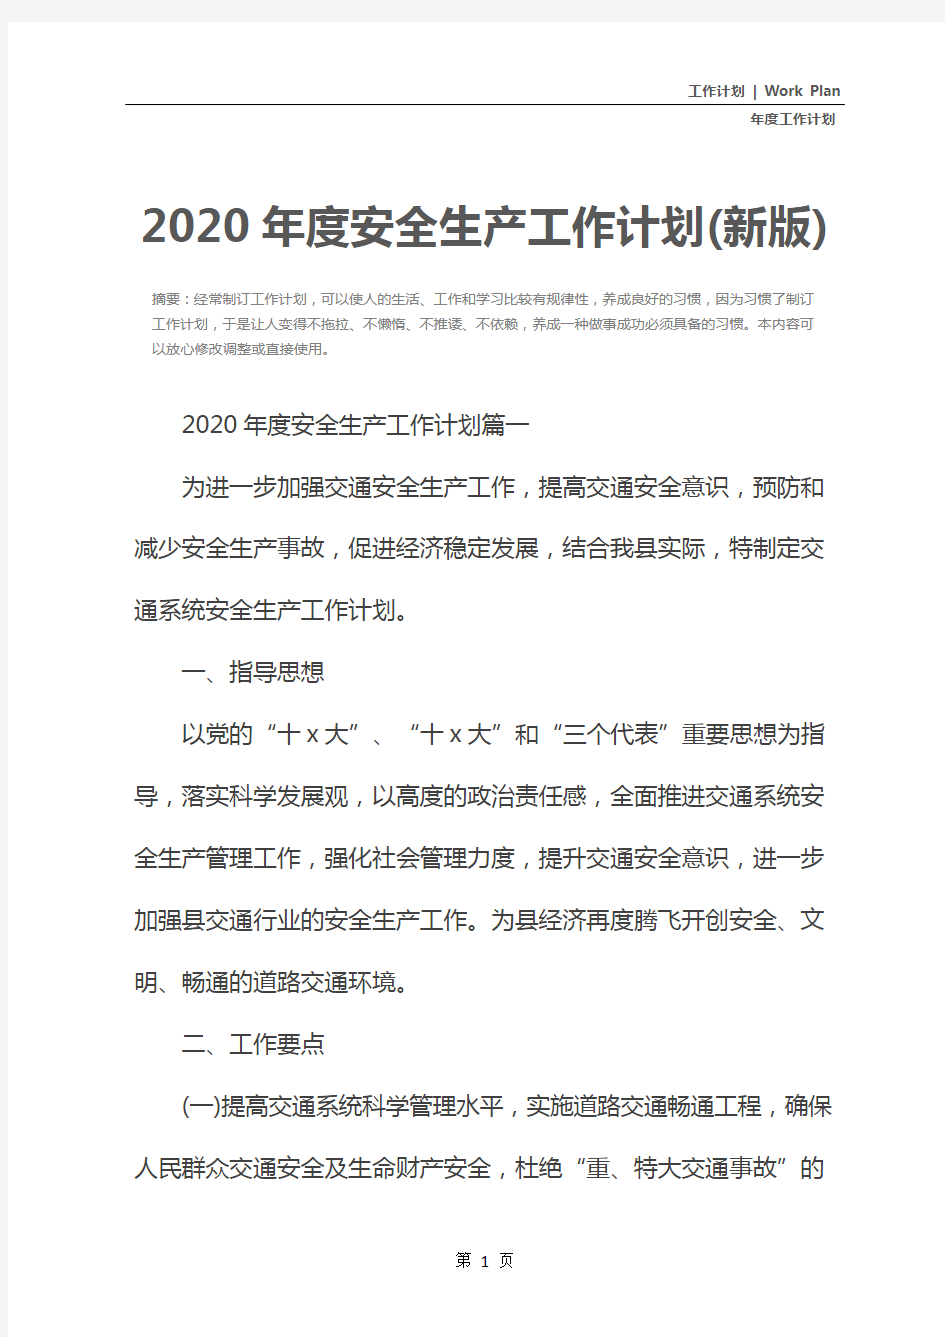 2020年度安全生产工作计划(新版)